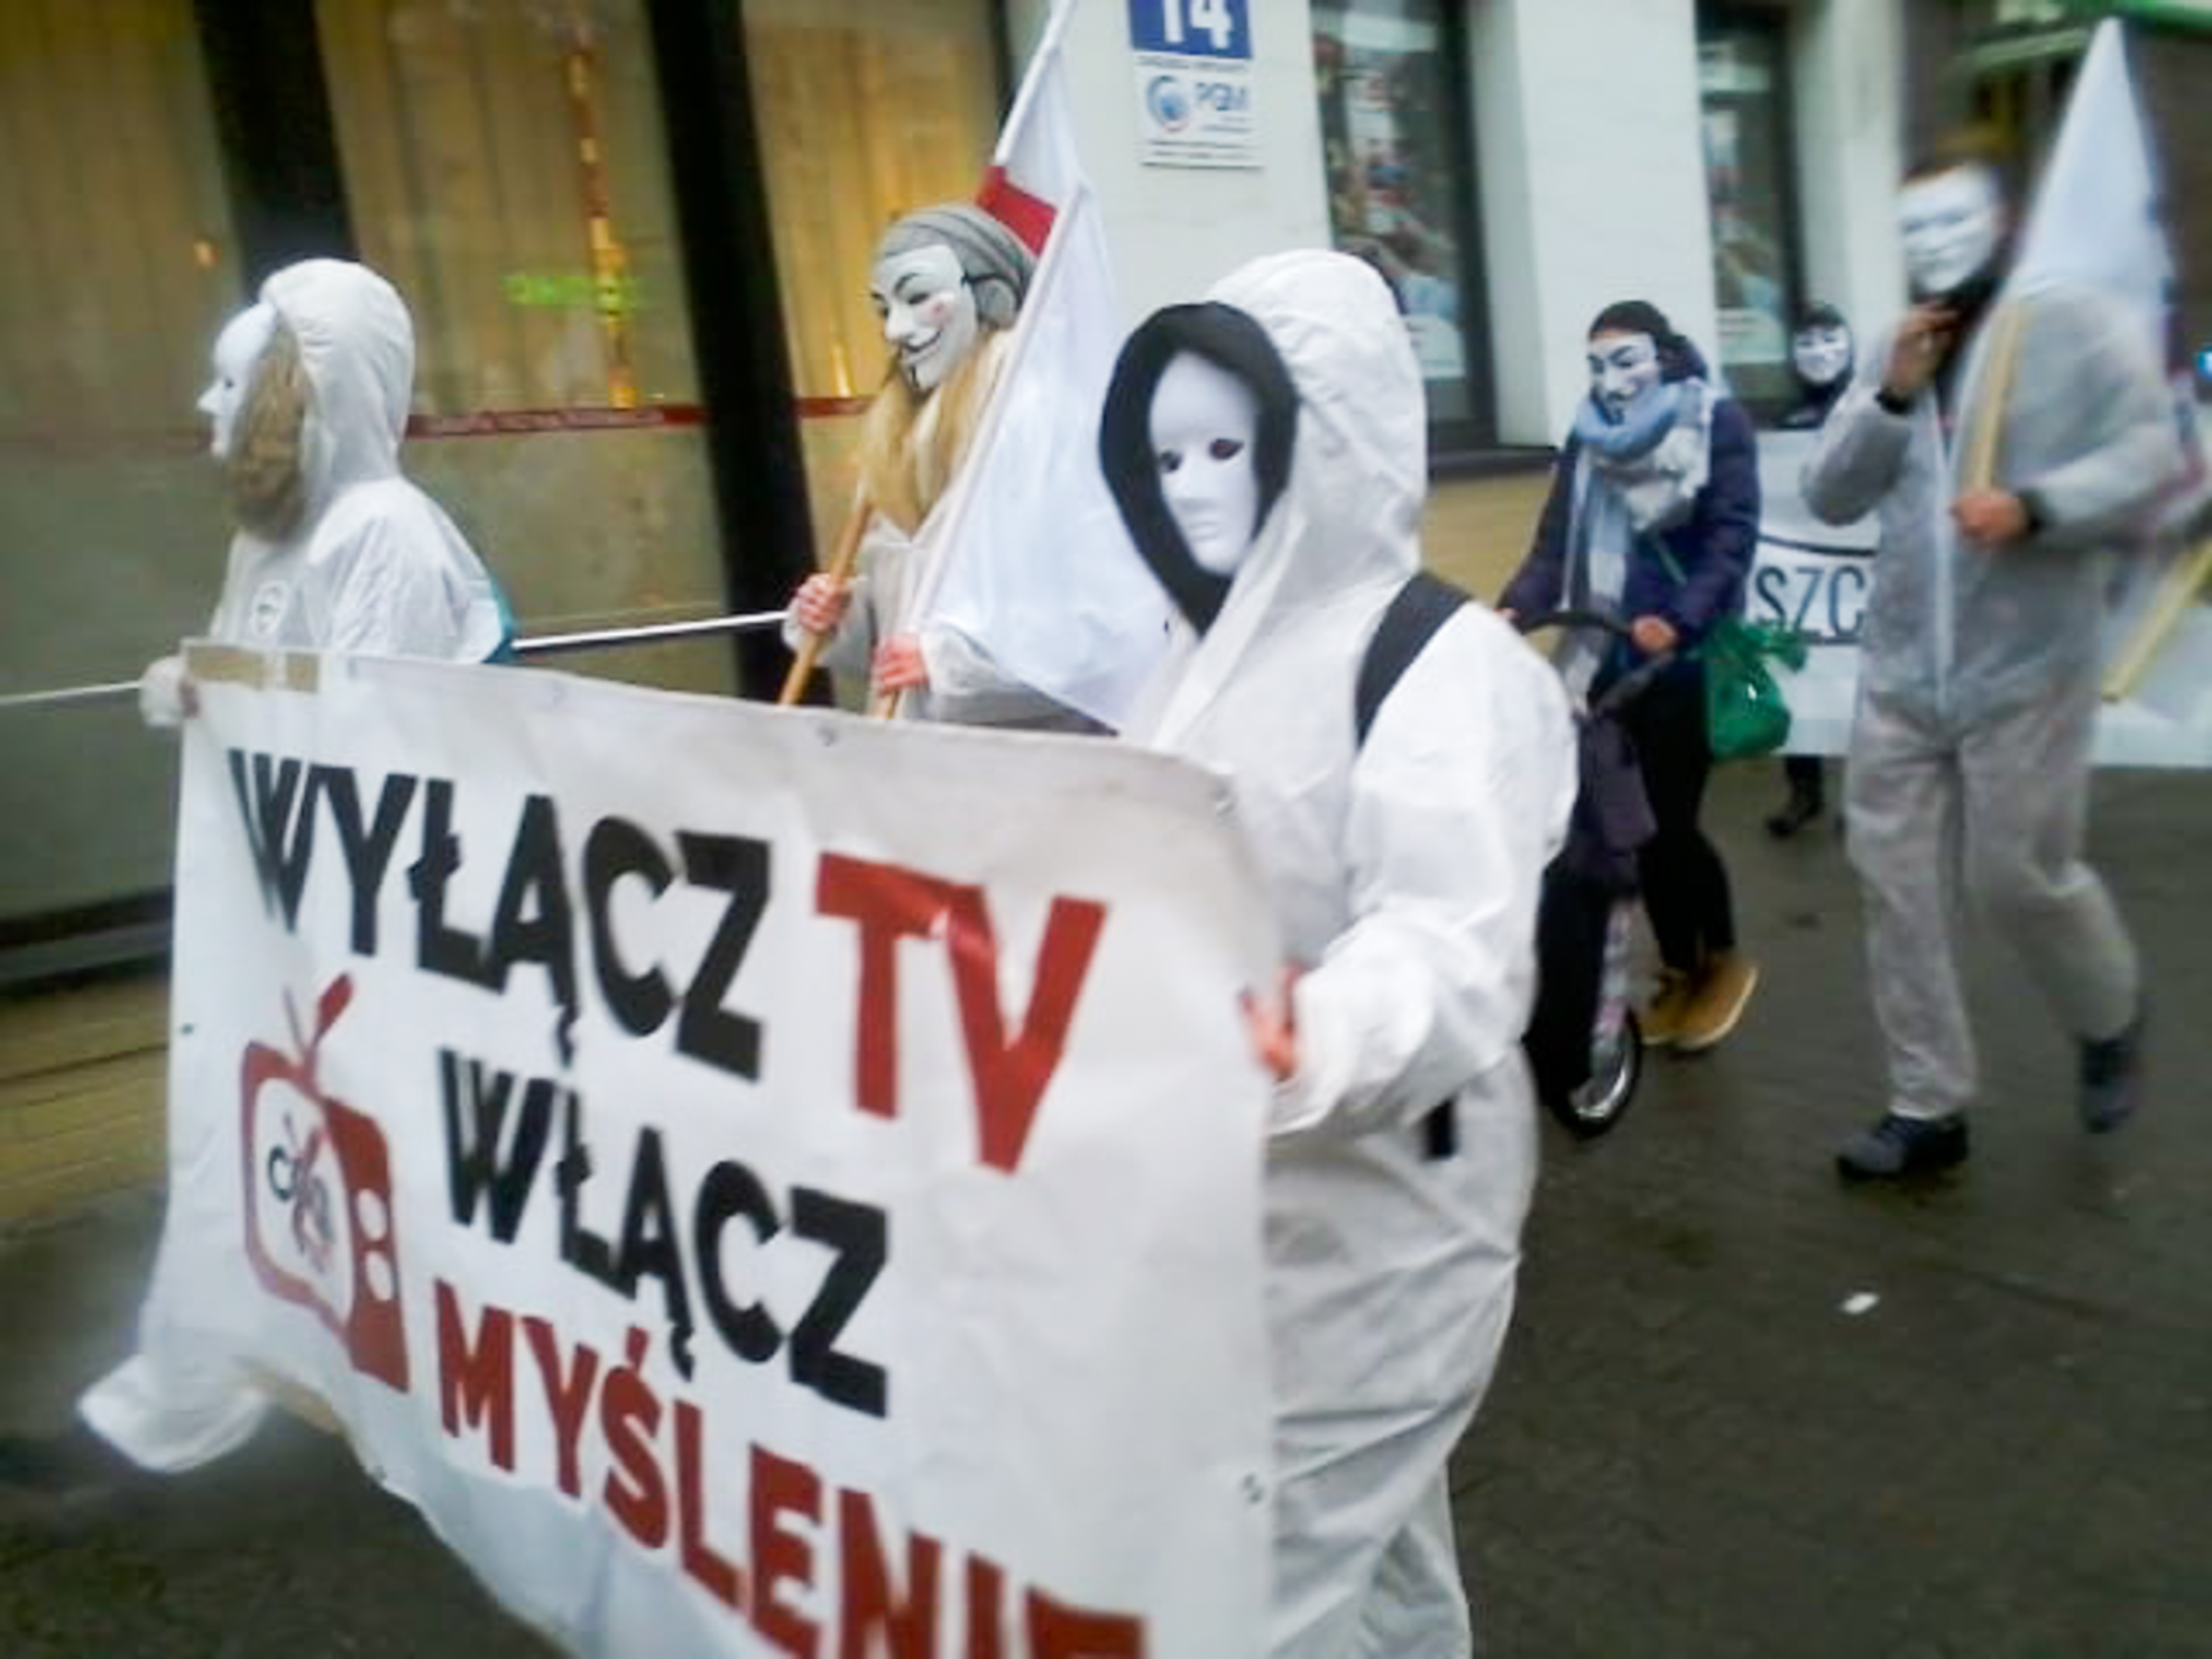 Ubrani w białe kombinezony protestowali w centrum Bełchatowa. Chodziło o szczepienia i COVID-19 [FOTO] - Zdjęcie główne